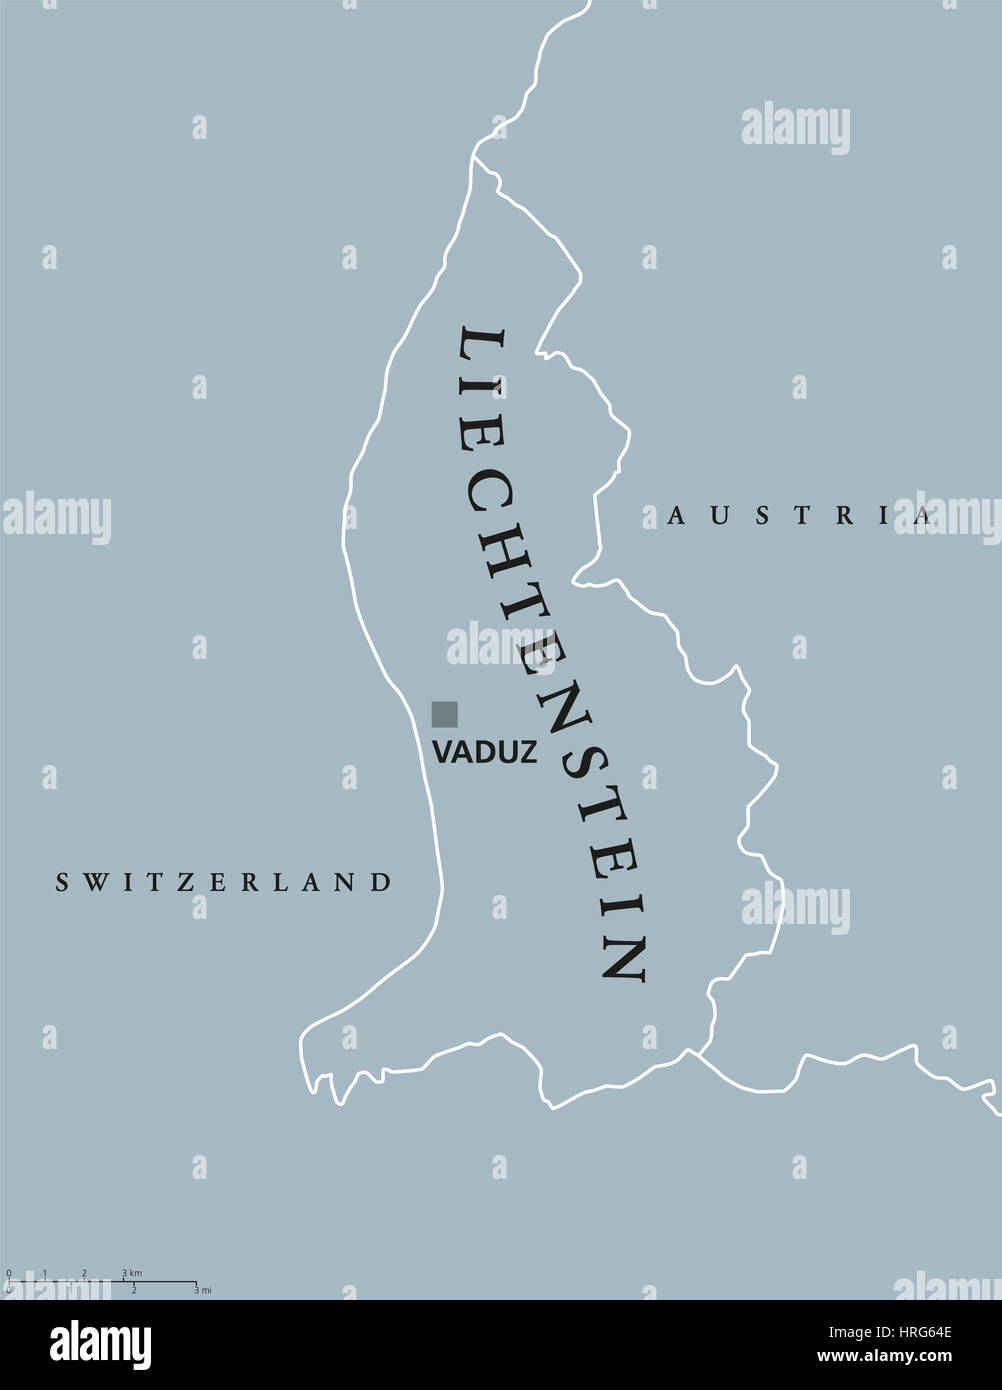 Carte politique du Liechtenstein à Vaduz capital, les frontières nationales et les pays voisins. Principauté et micro sans littoral en Europe centrale. Banque D'Images